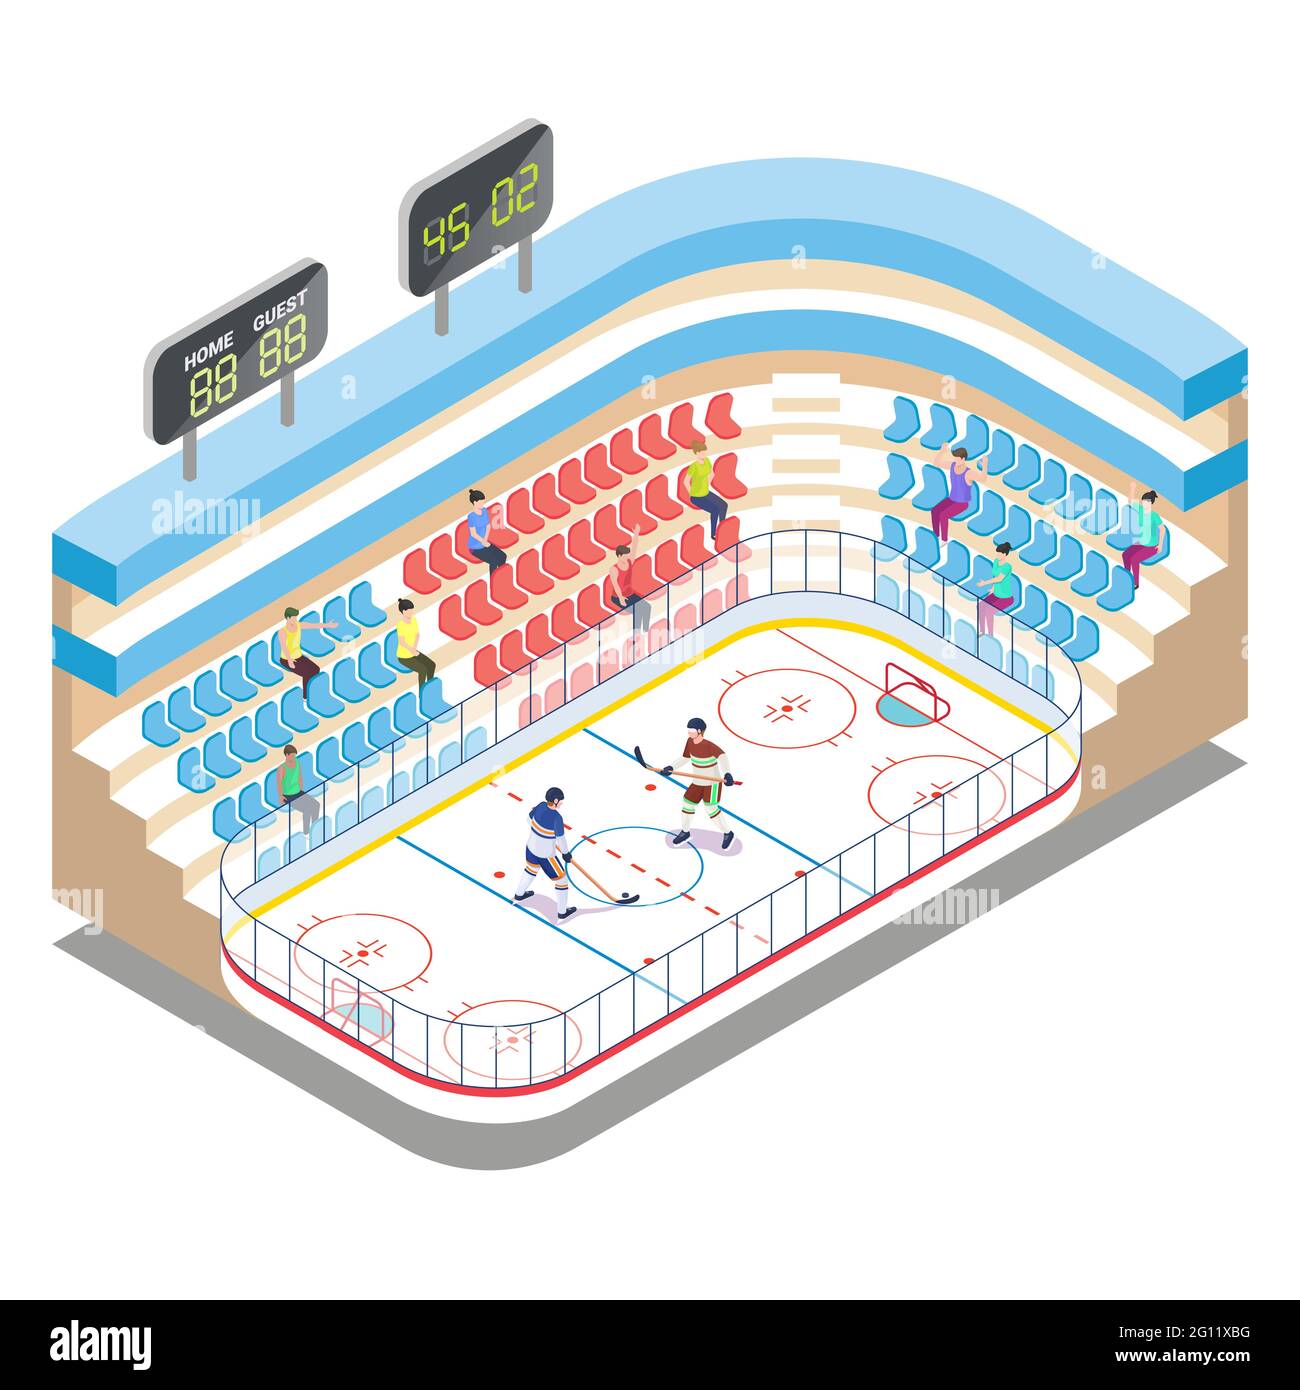 Stade de hockey sur glace isométrique, joueurs et fans, illustration vectorielle plate. Arène de hockey sur glace, patinoire, terrain de sport, Tribune. Illustration de Vecteur